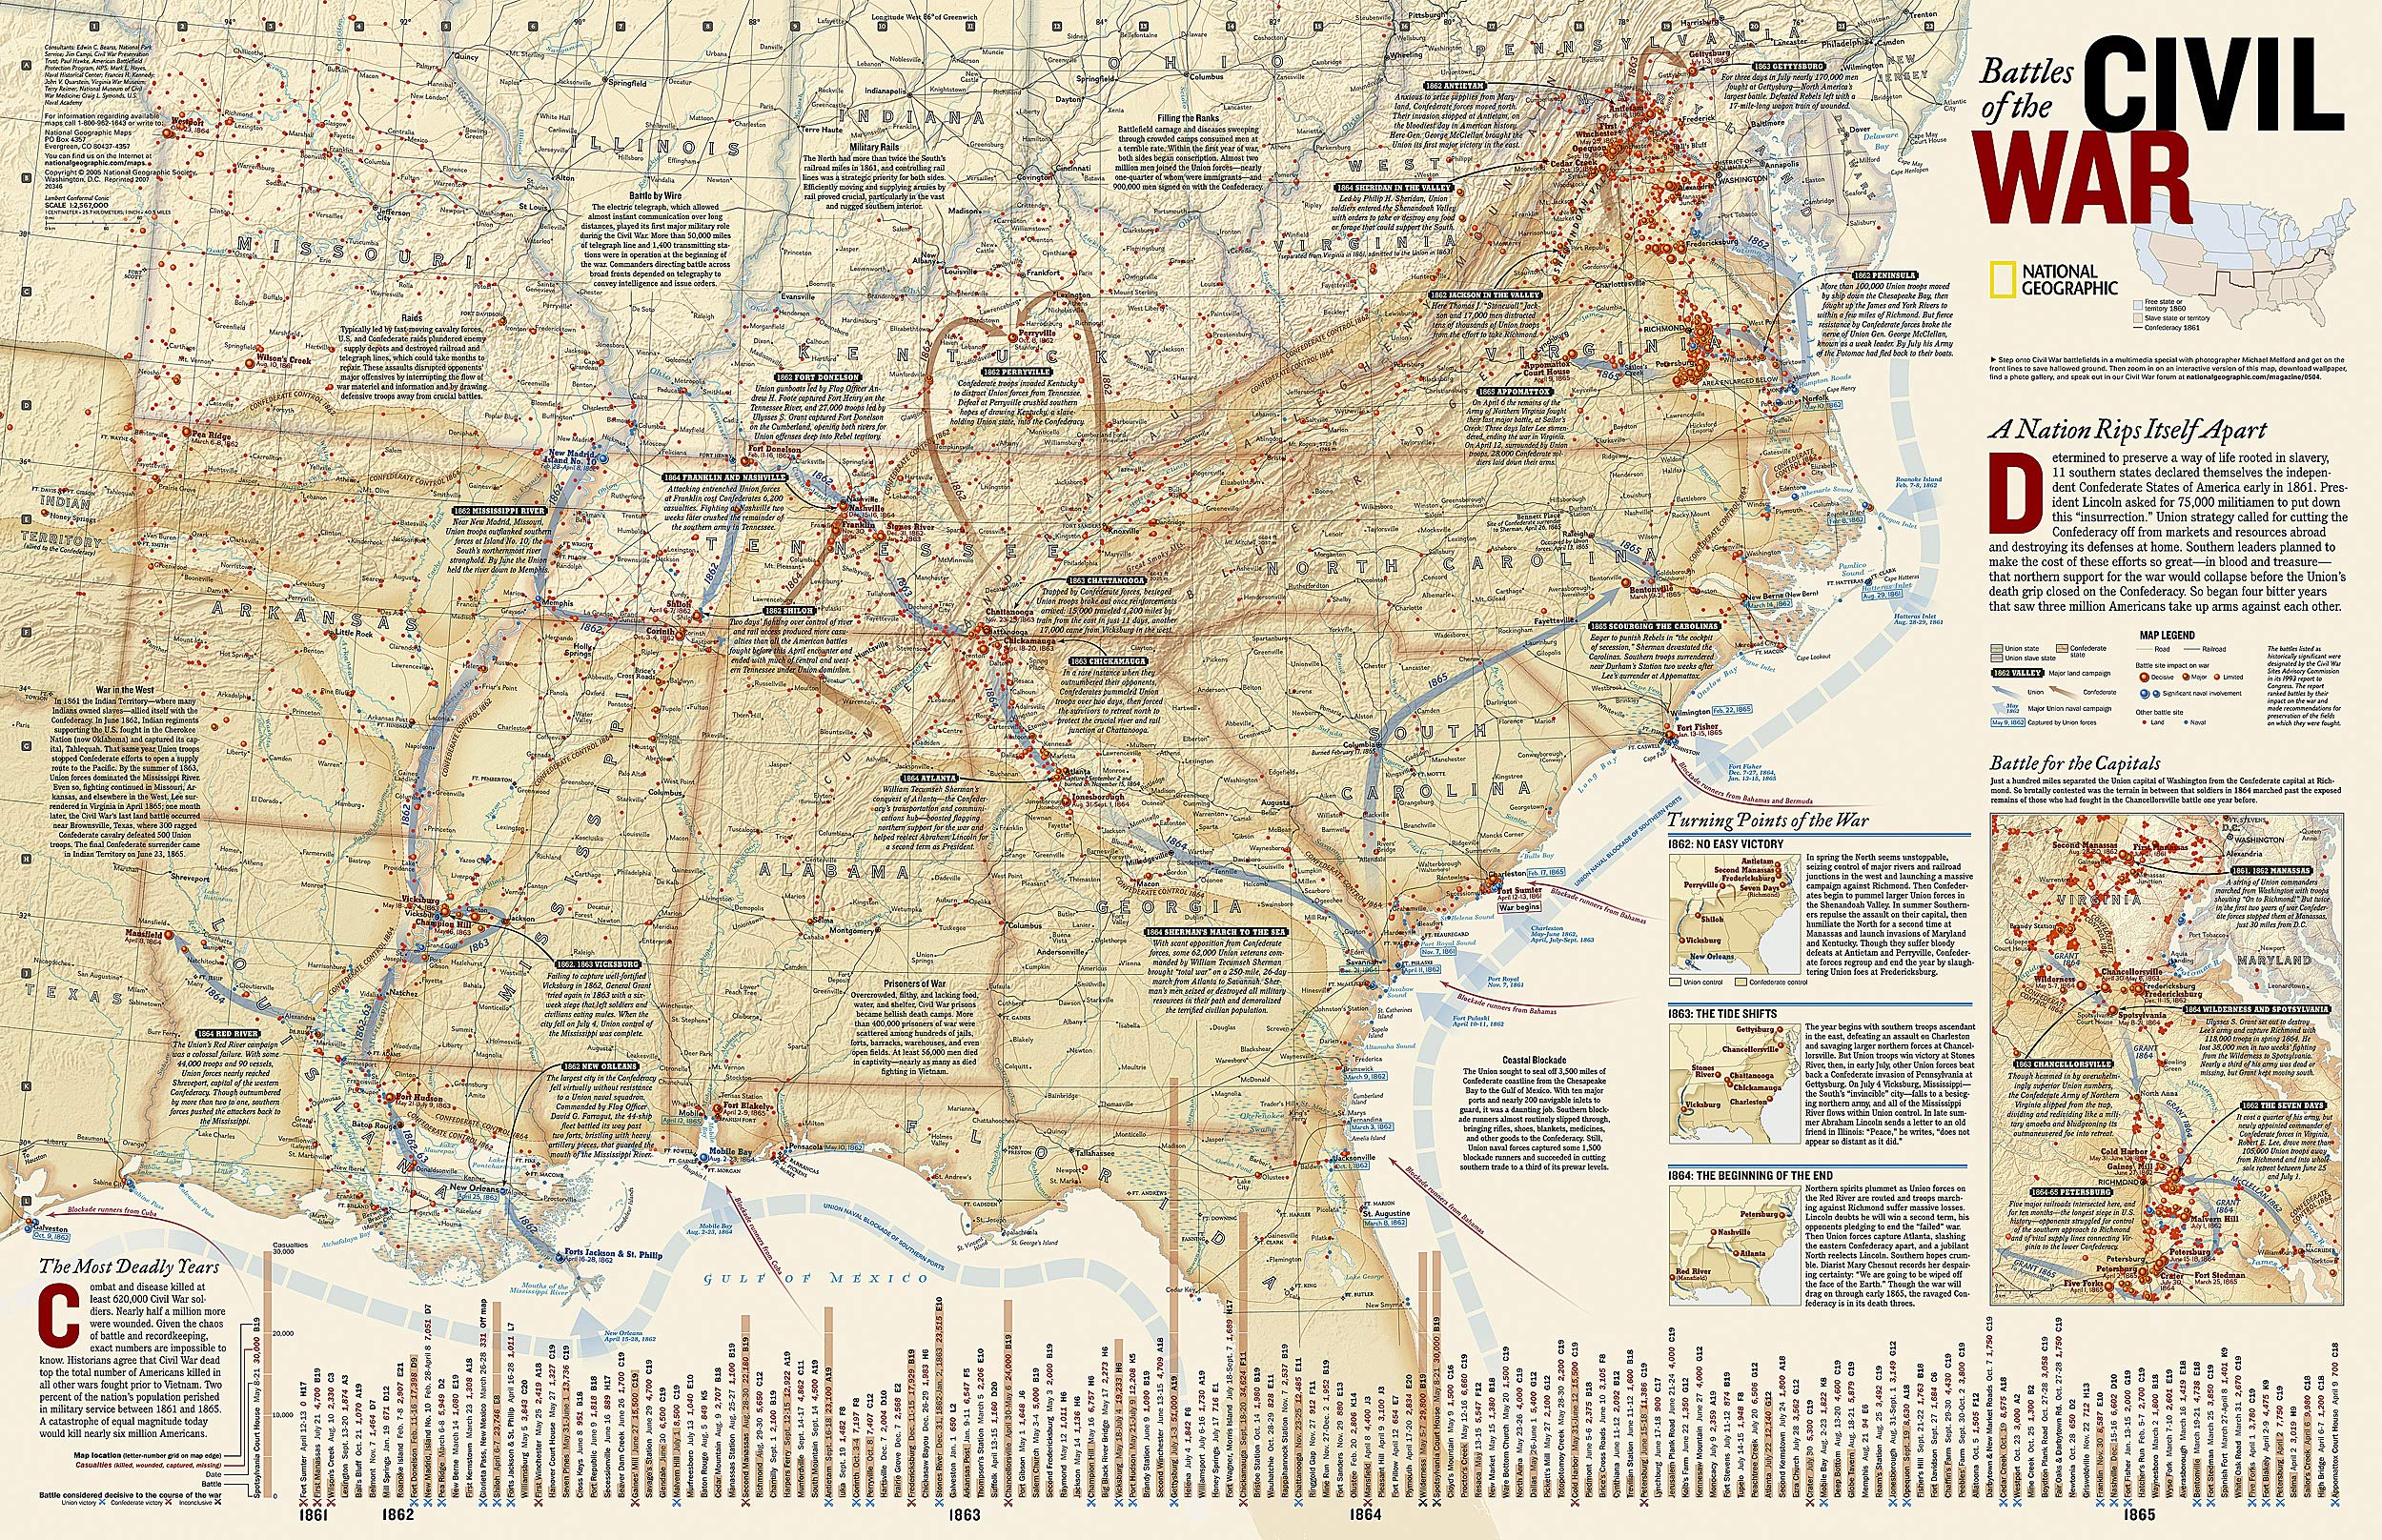 Battles of the Civil War Wall Map - NG